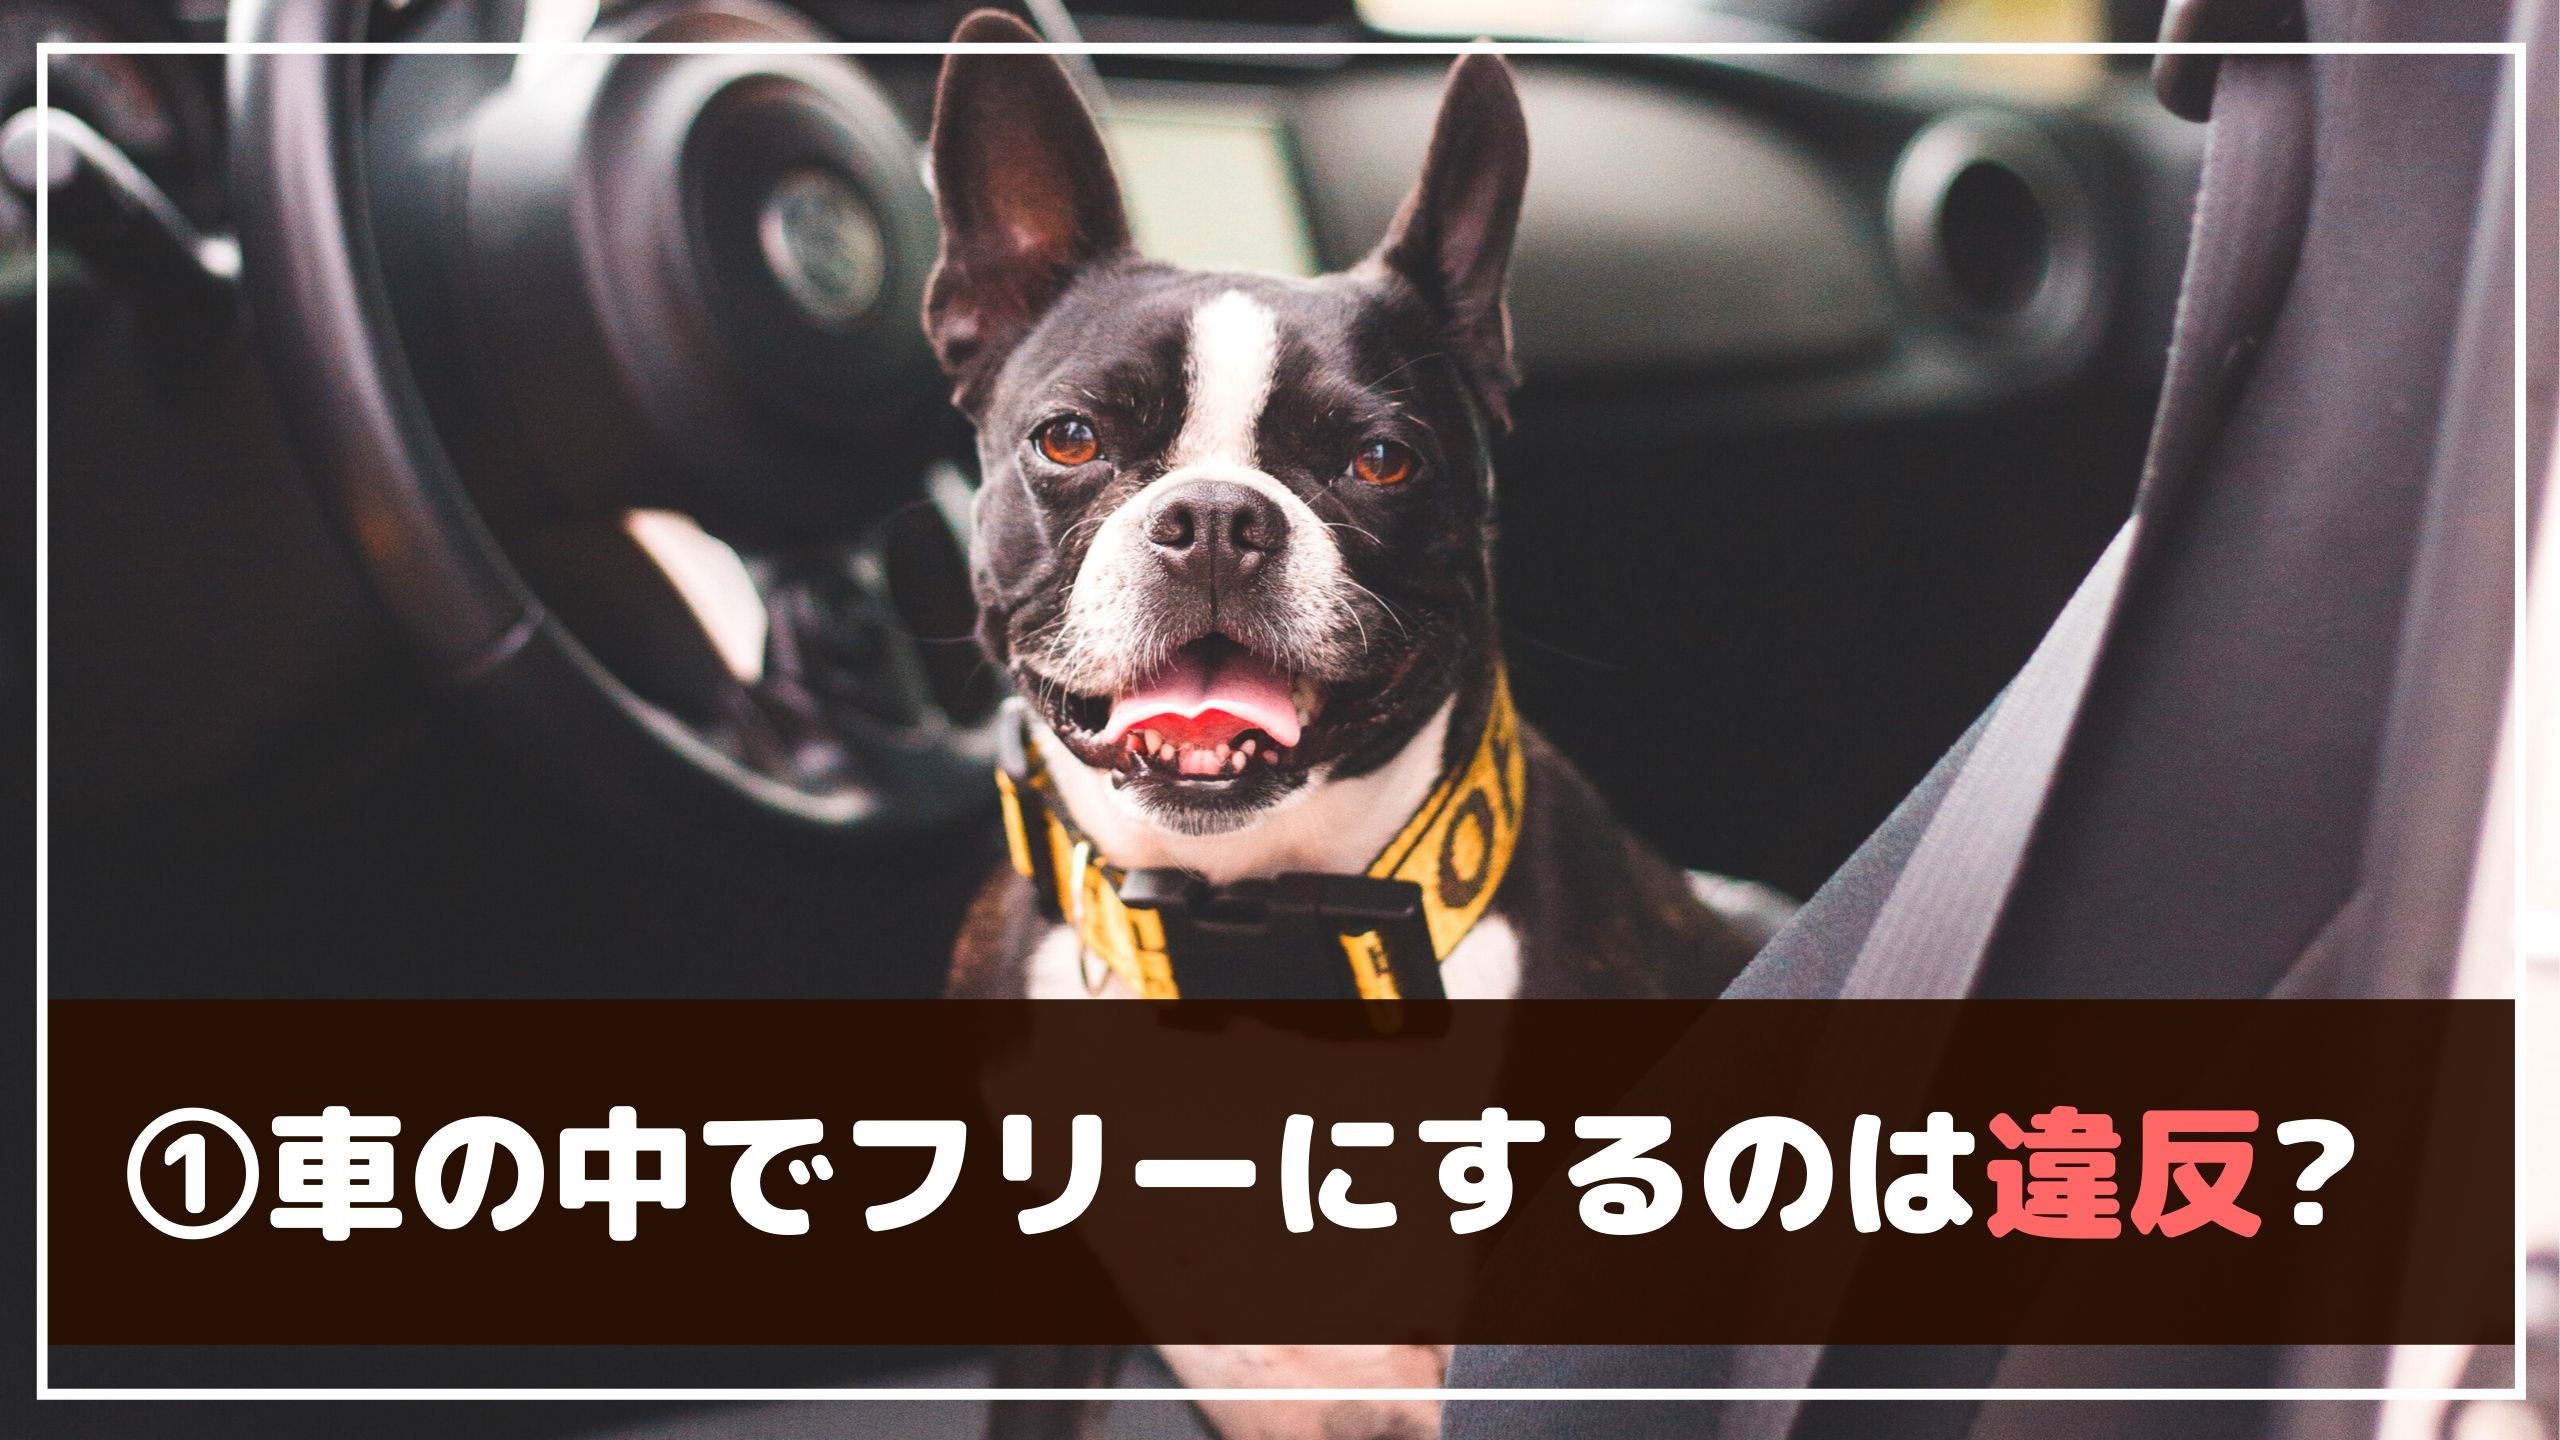 愛犬と安全にドライブするために 車で注意する7つのこと 動物看護師が解説 愛犬との旅行ならイヌトミィ